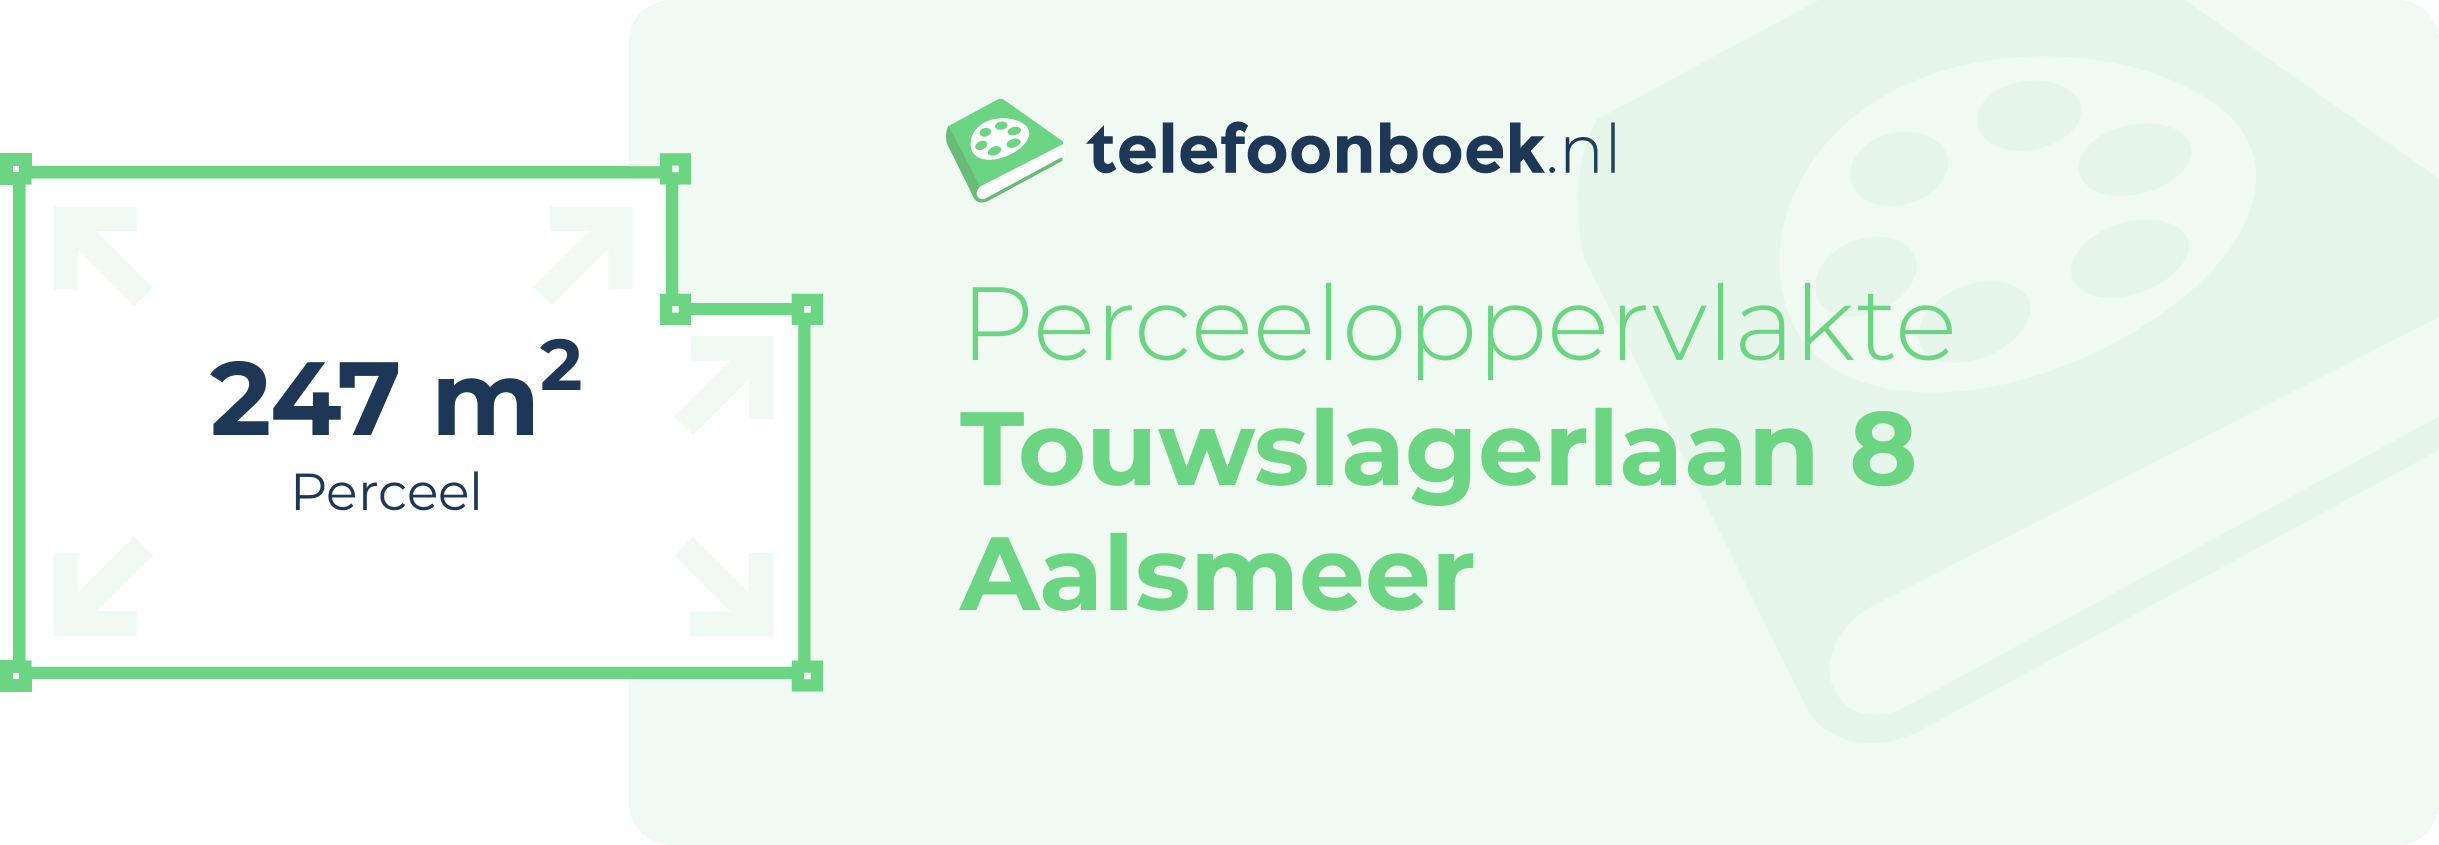 Perceeloppervlakte Touwslagerlaan 8 Aalsmeer